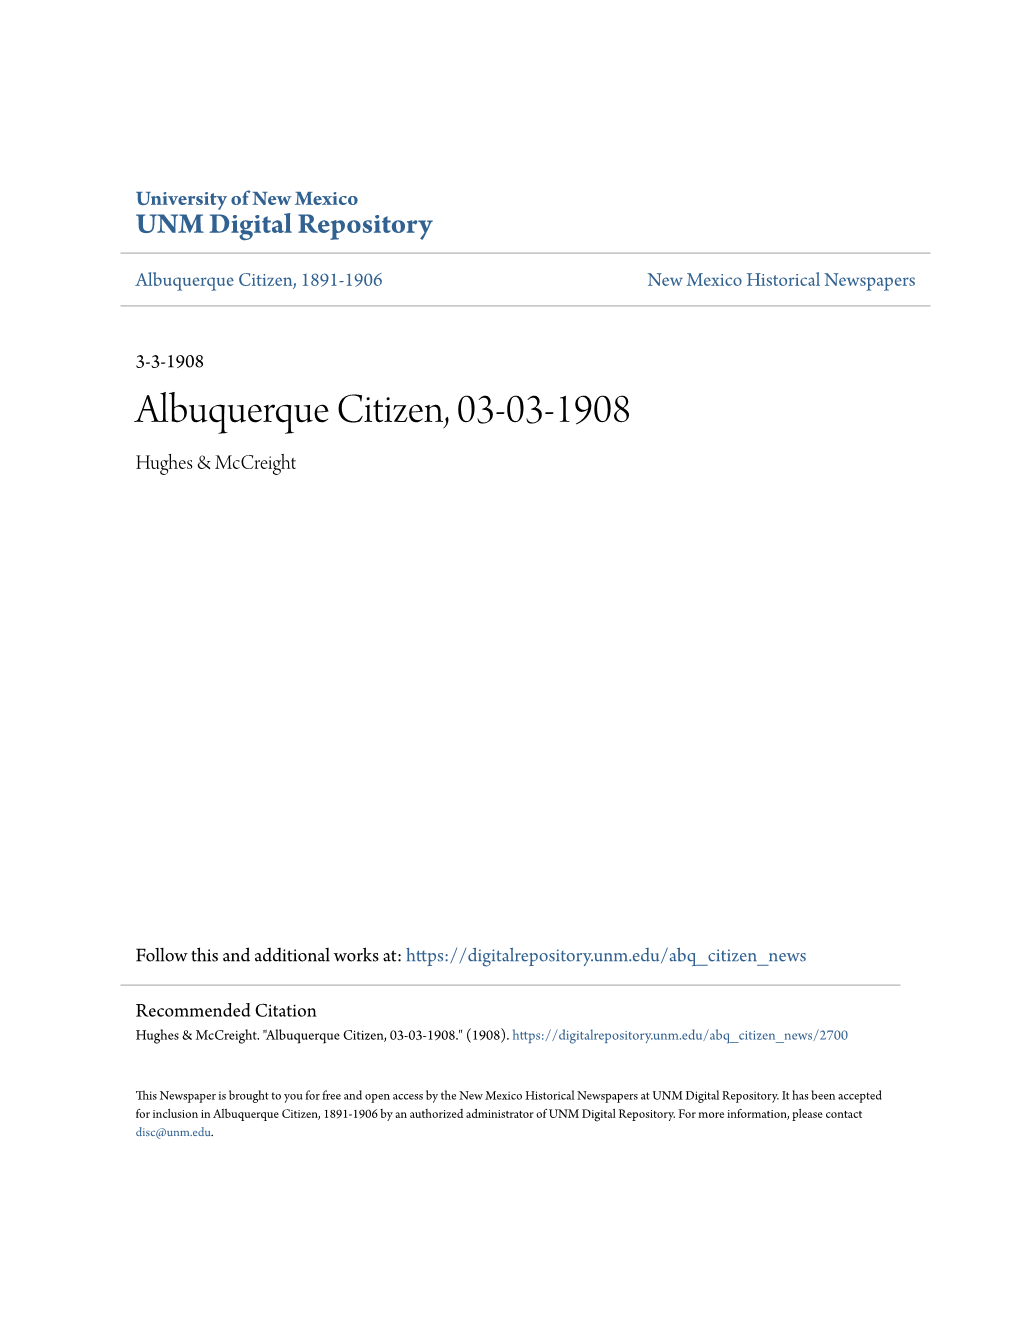 Albuquerque Citizen, 03-03-1908 Hughes & Mccreight